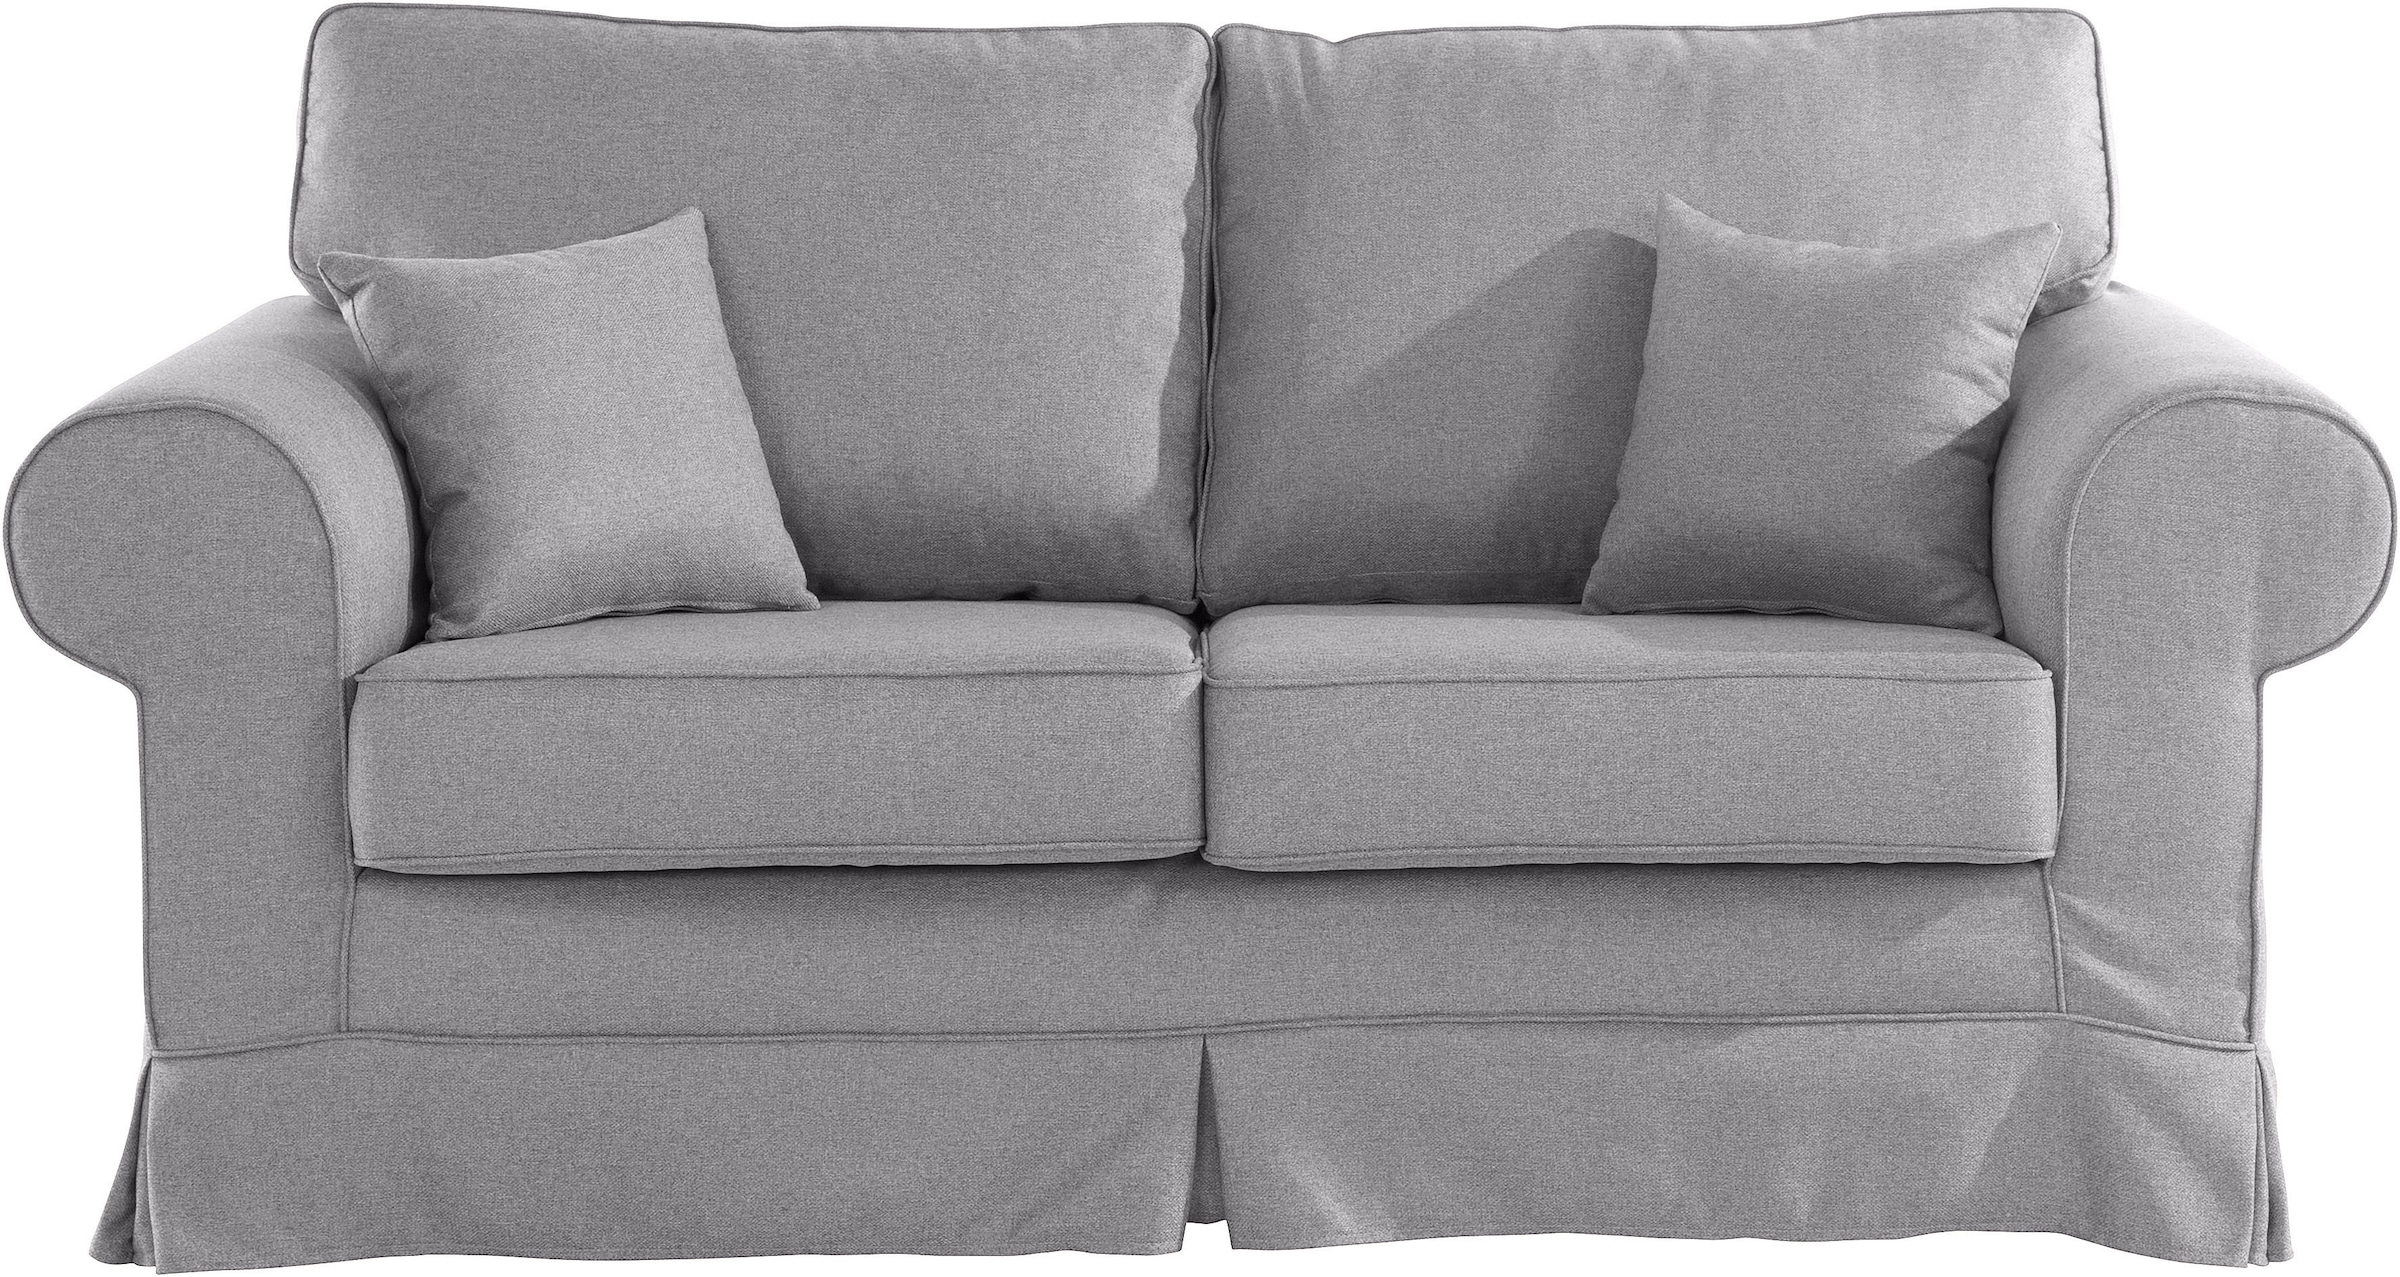 kaufen online Stretch Trendige Couchbezug